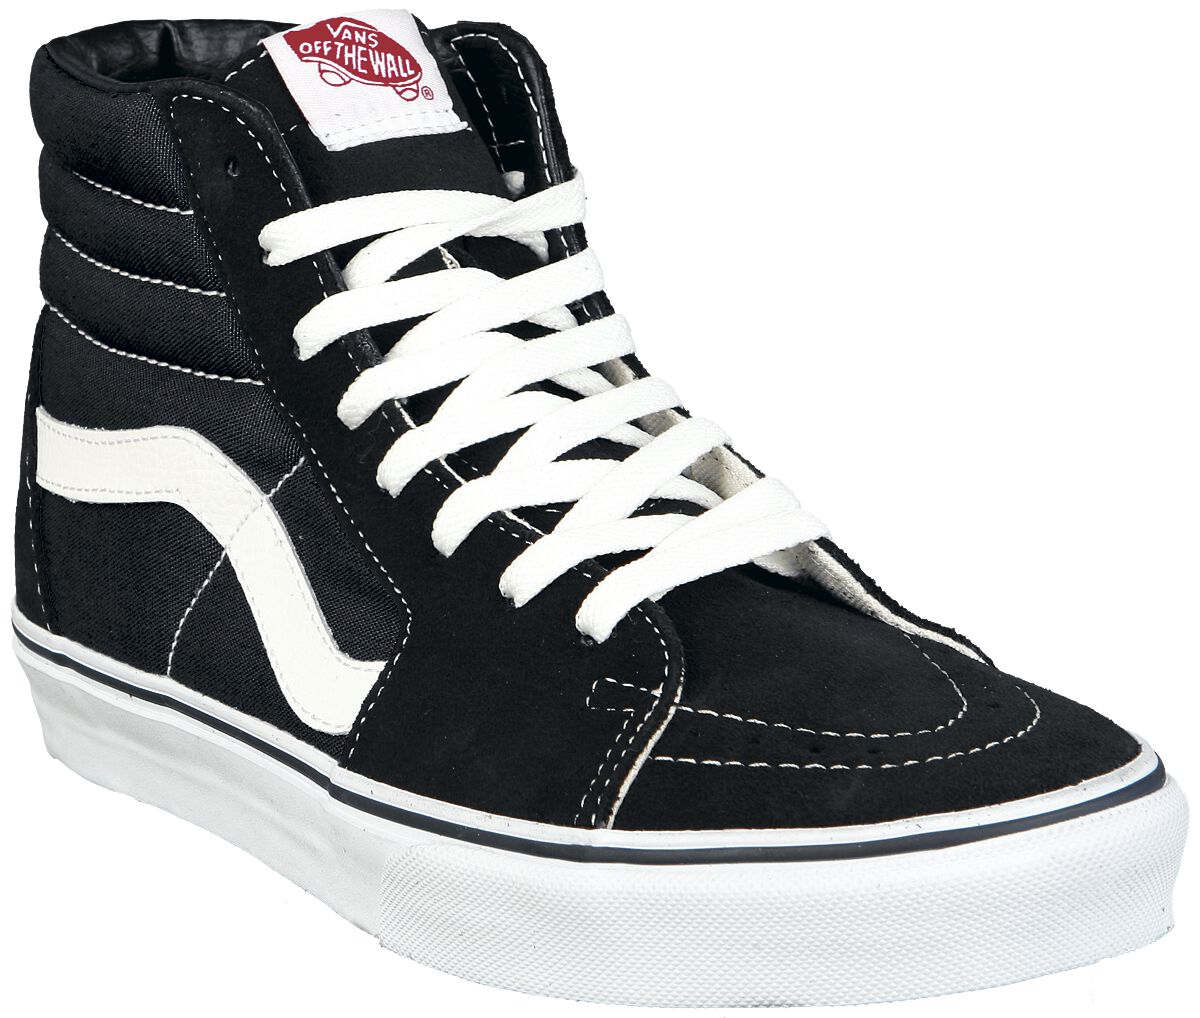 Vans Sneaker high - SK8-Hi - EU37 bis EU47 - Größe EU46 - schwarz/weiß